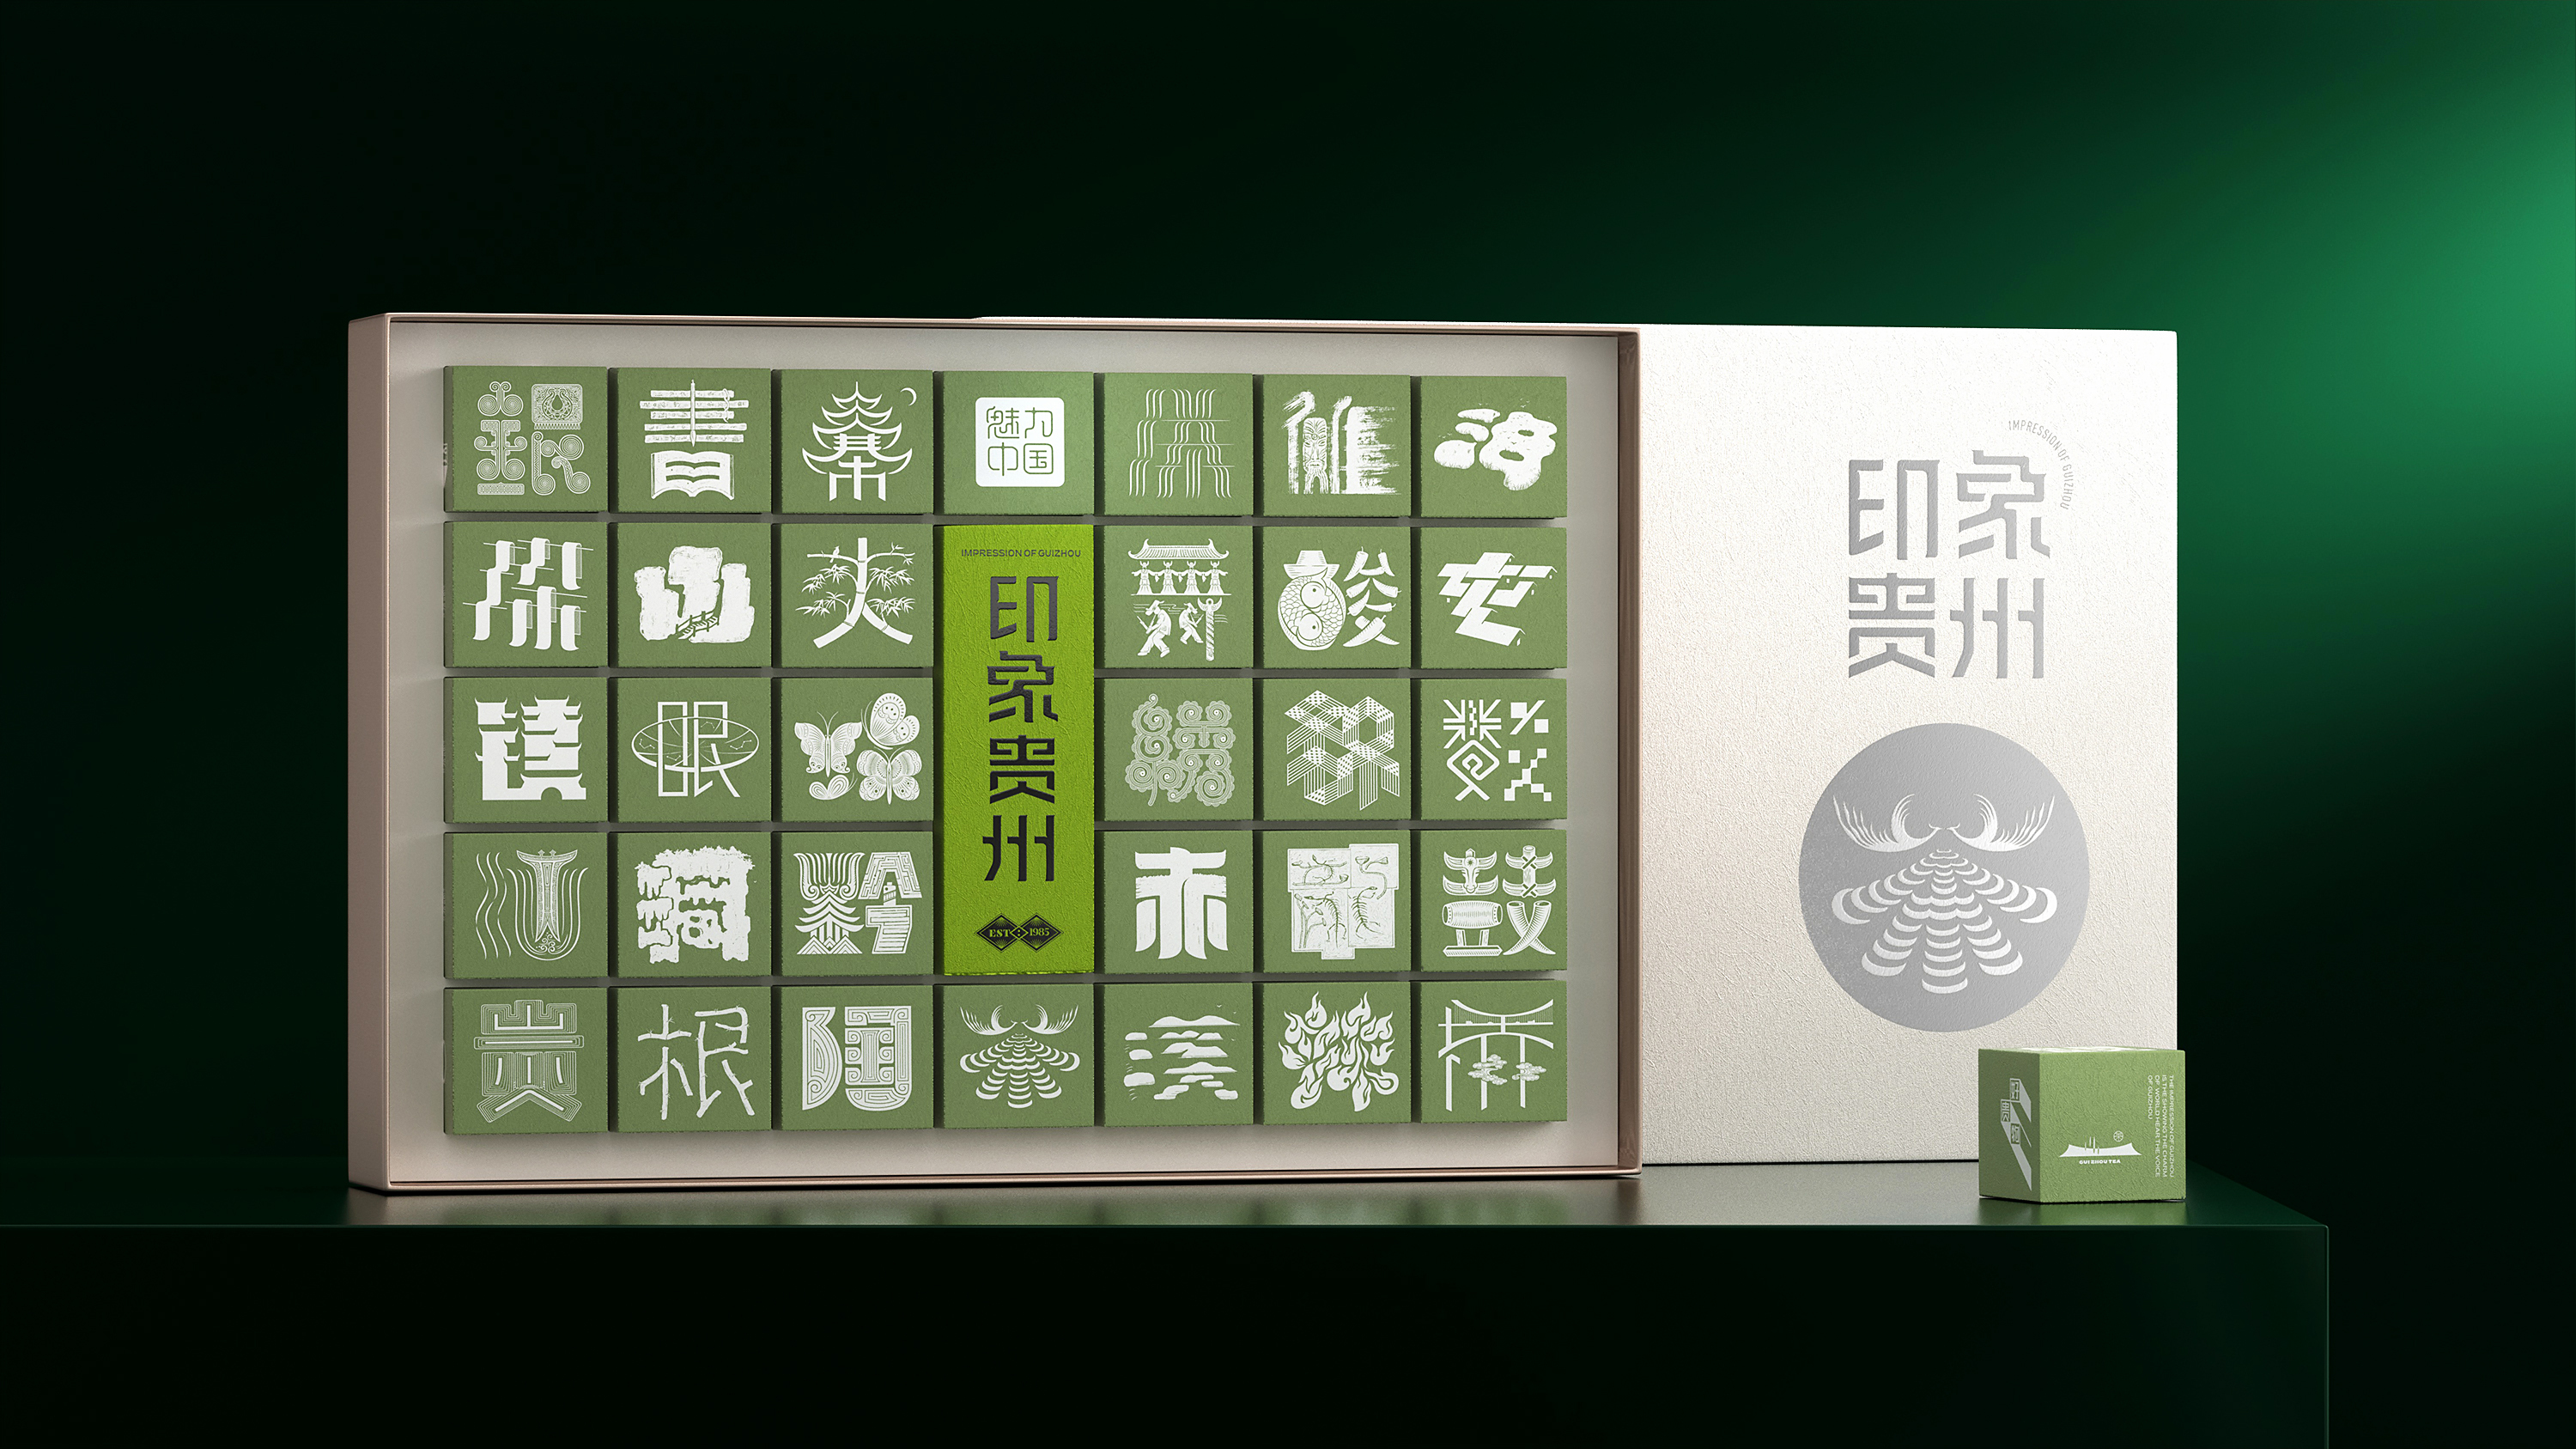 上行设计 / 印象贵州茶包装设计